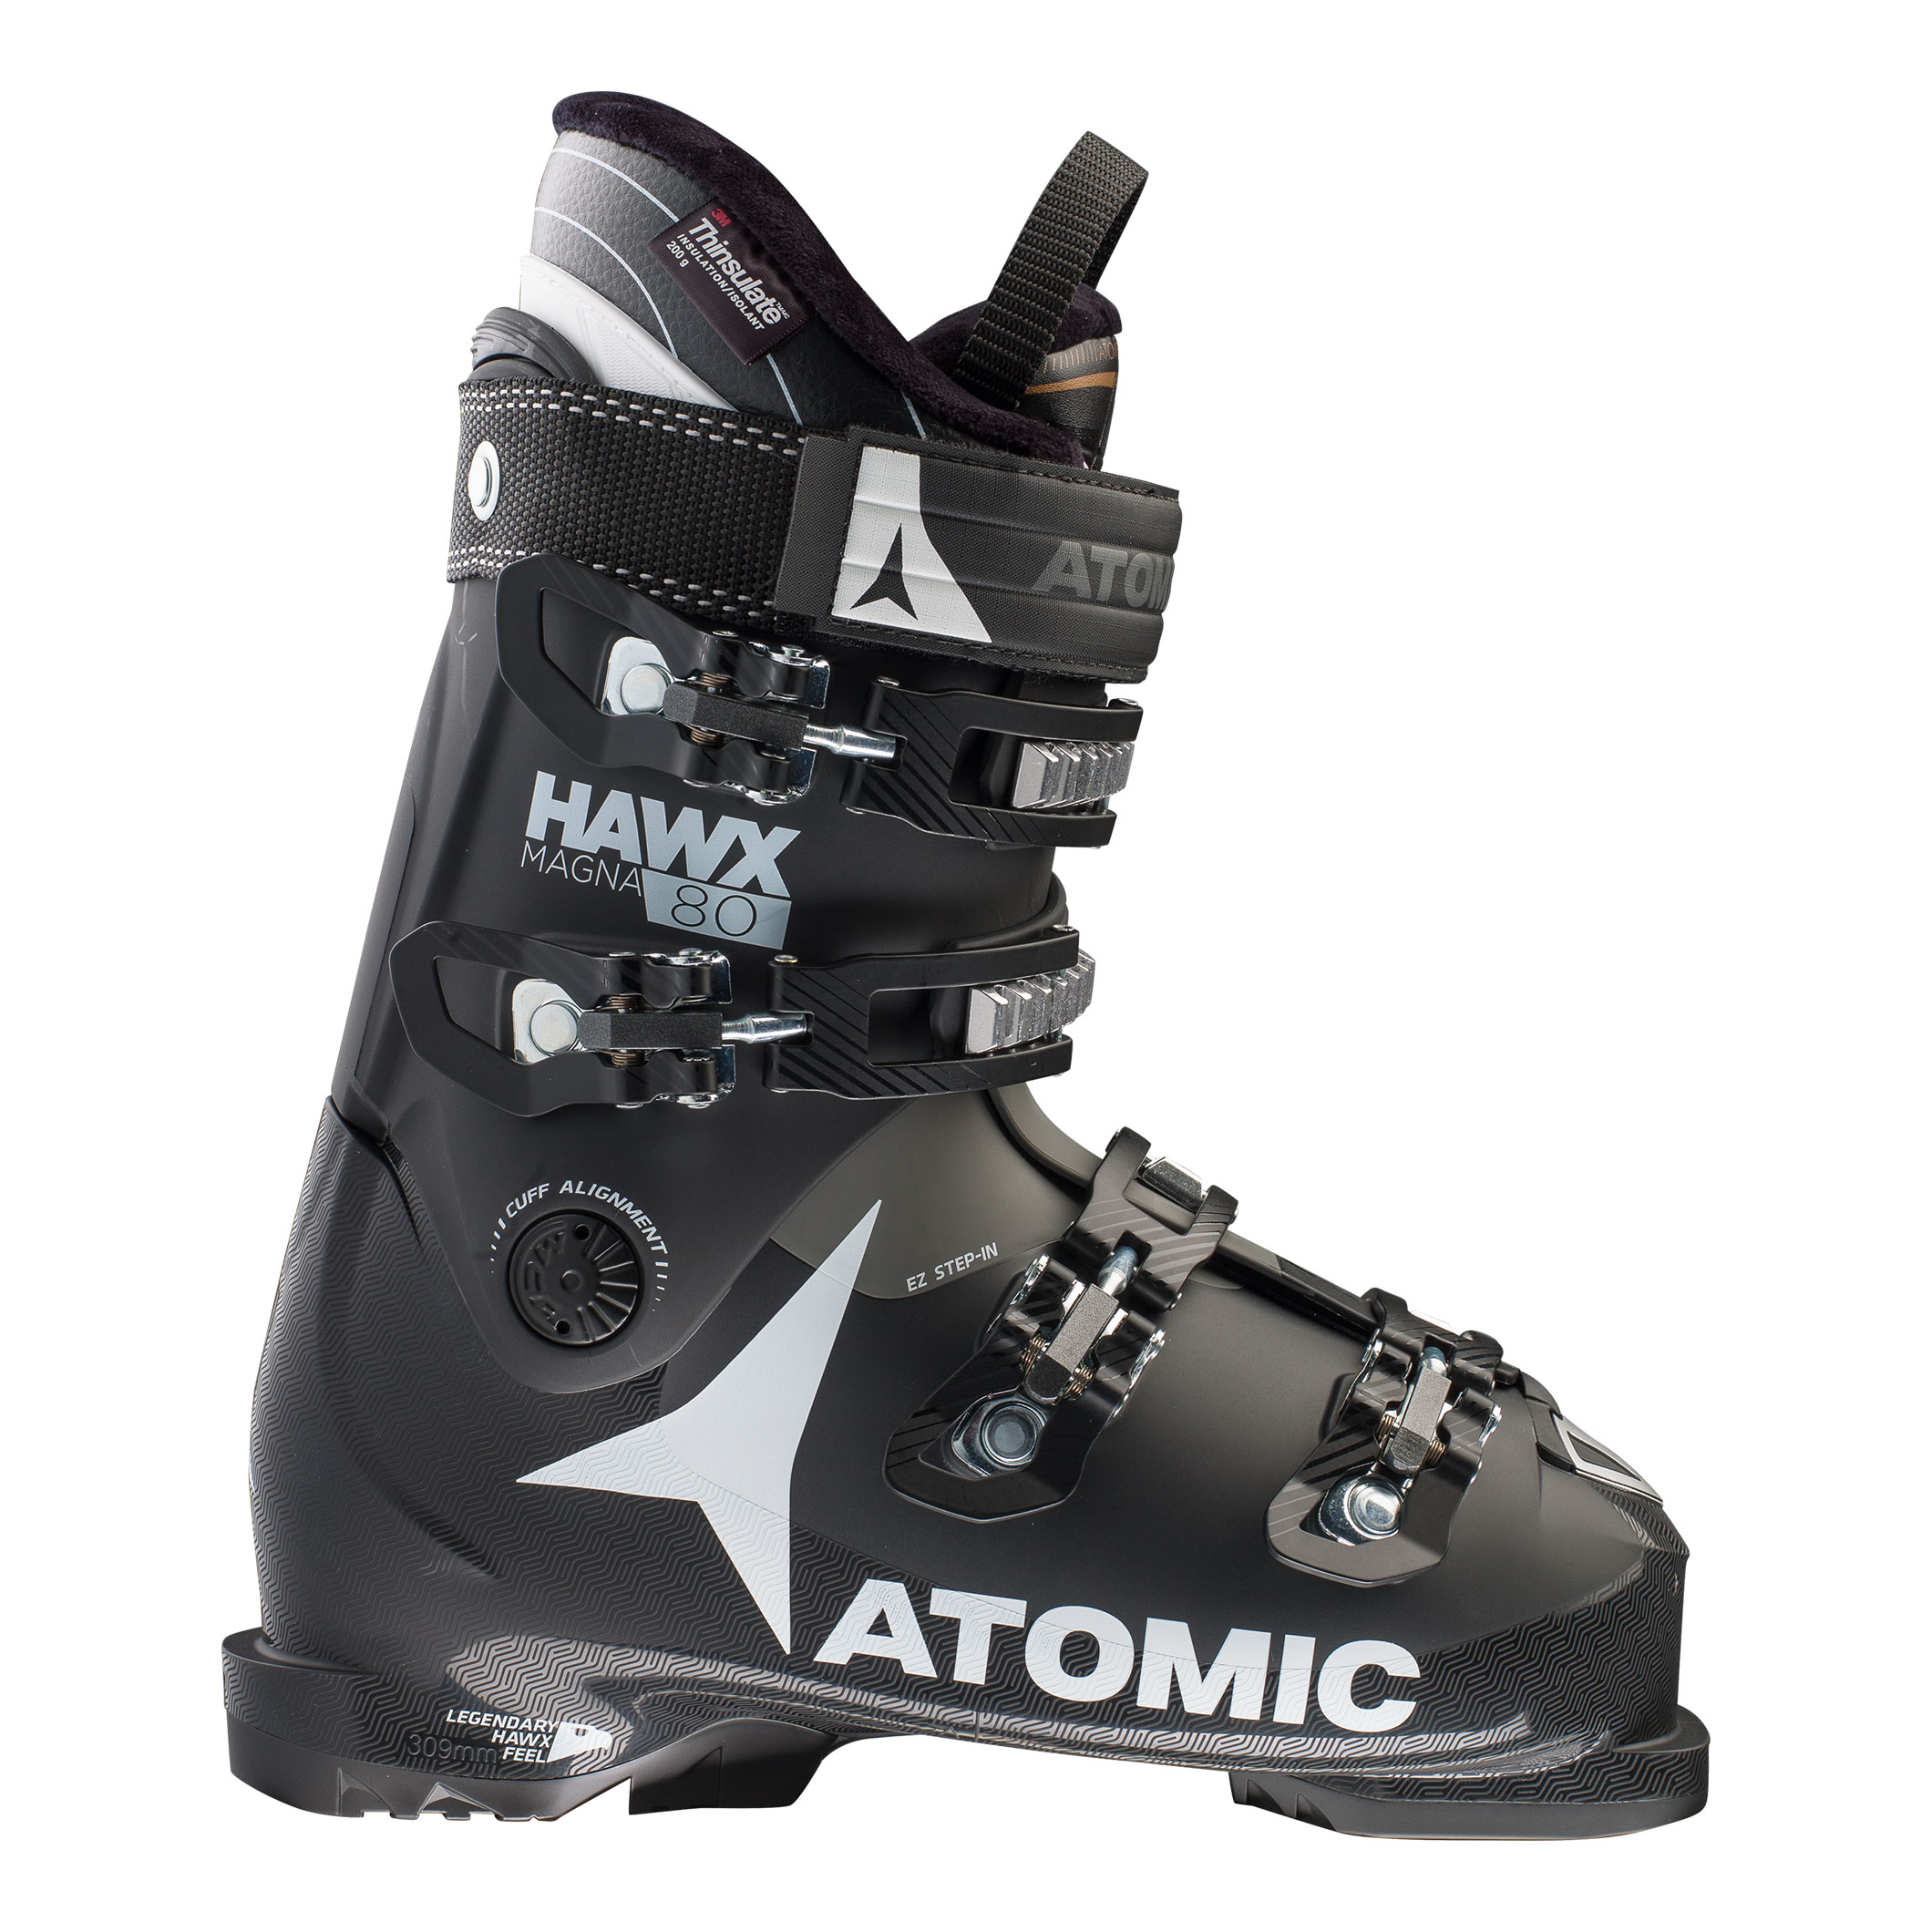 Ski Boots | Atomic Hawx MAGNA 80 | Ski equipment